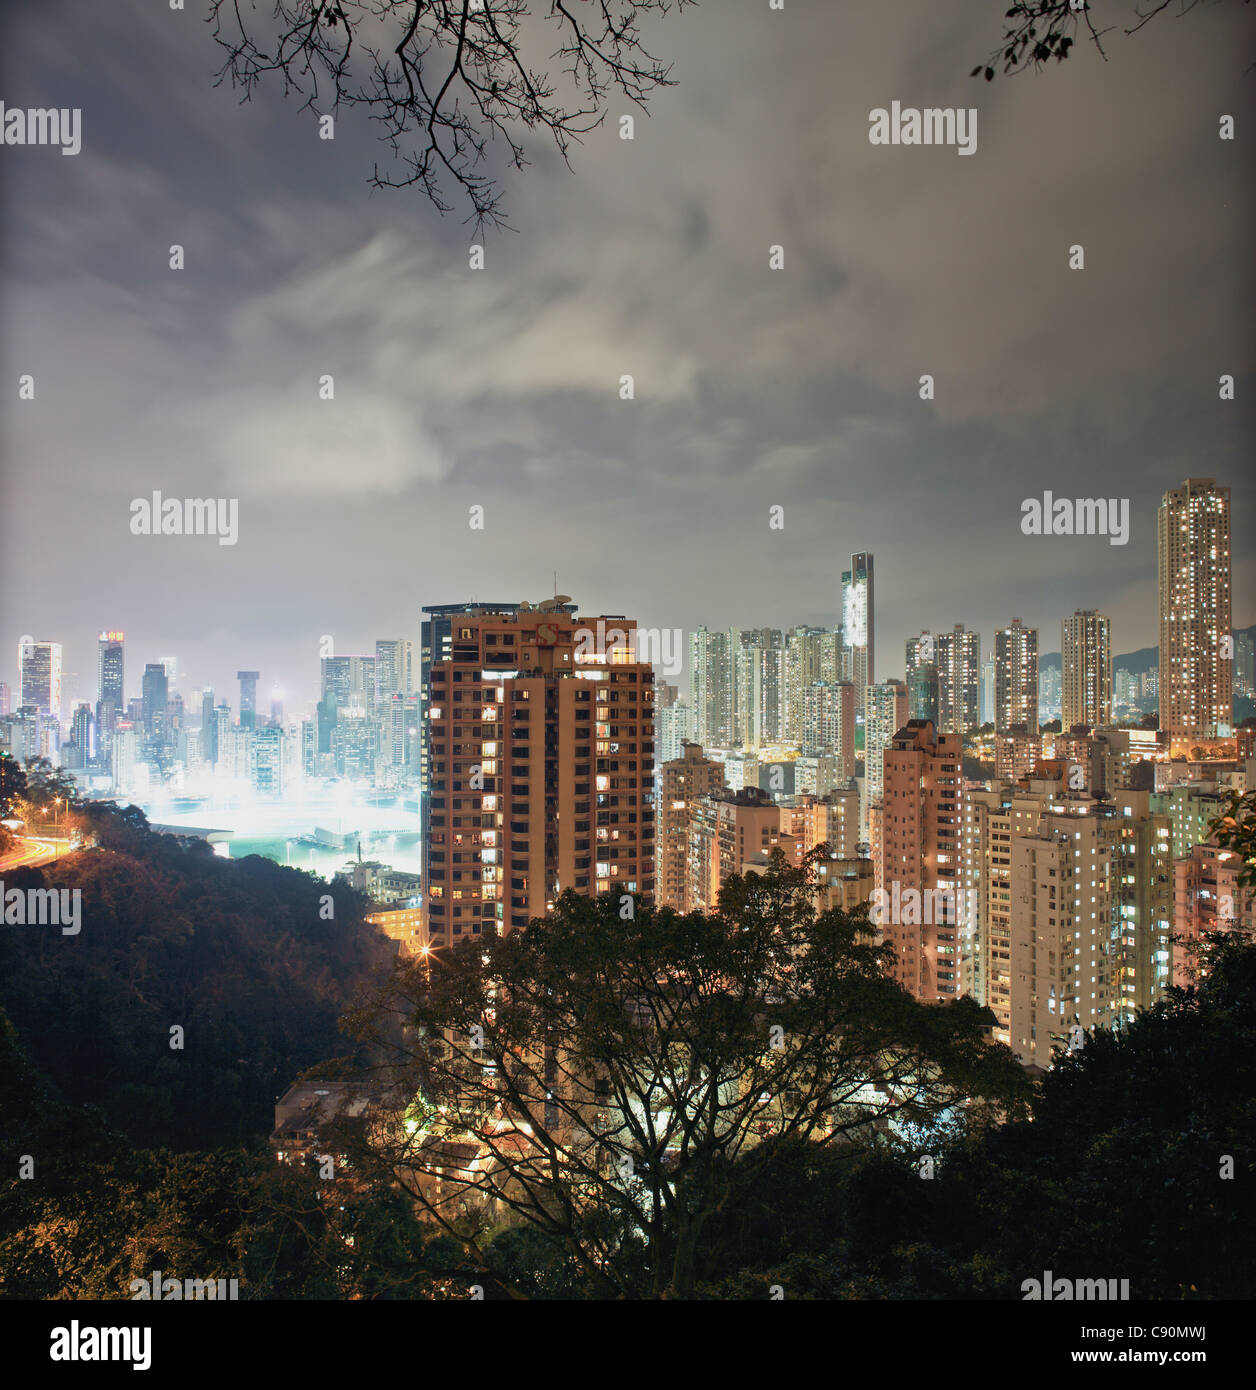 Hongkong Skyline, Happy Valley and Wan Chai at night, Hong Kong, China Stock Photo